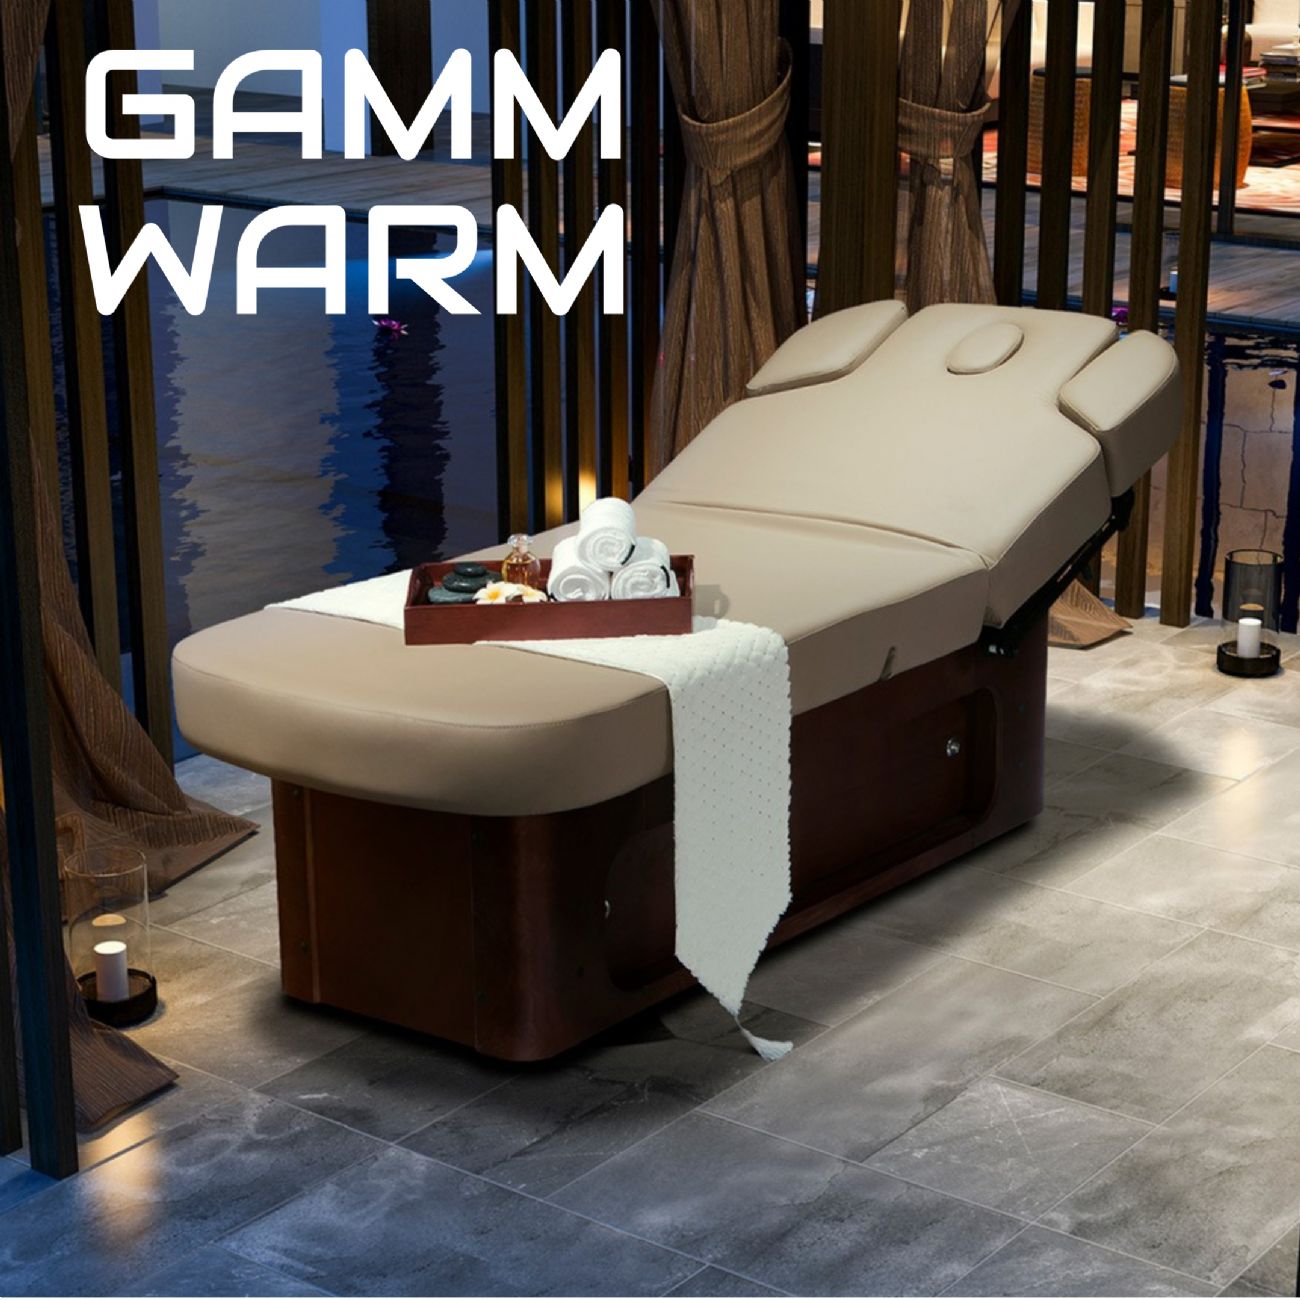 GAMM WARM lettino massaggio SPA in legno 4 motori termoriscaldato